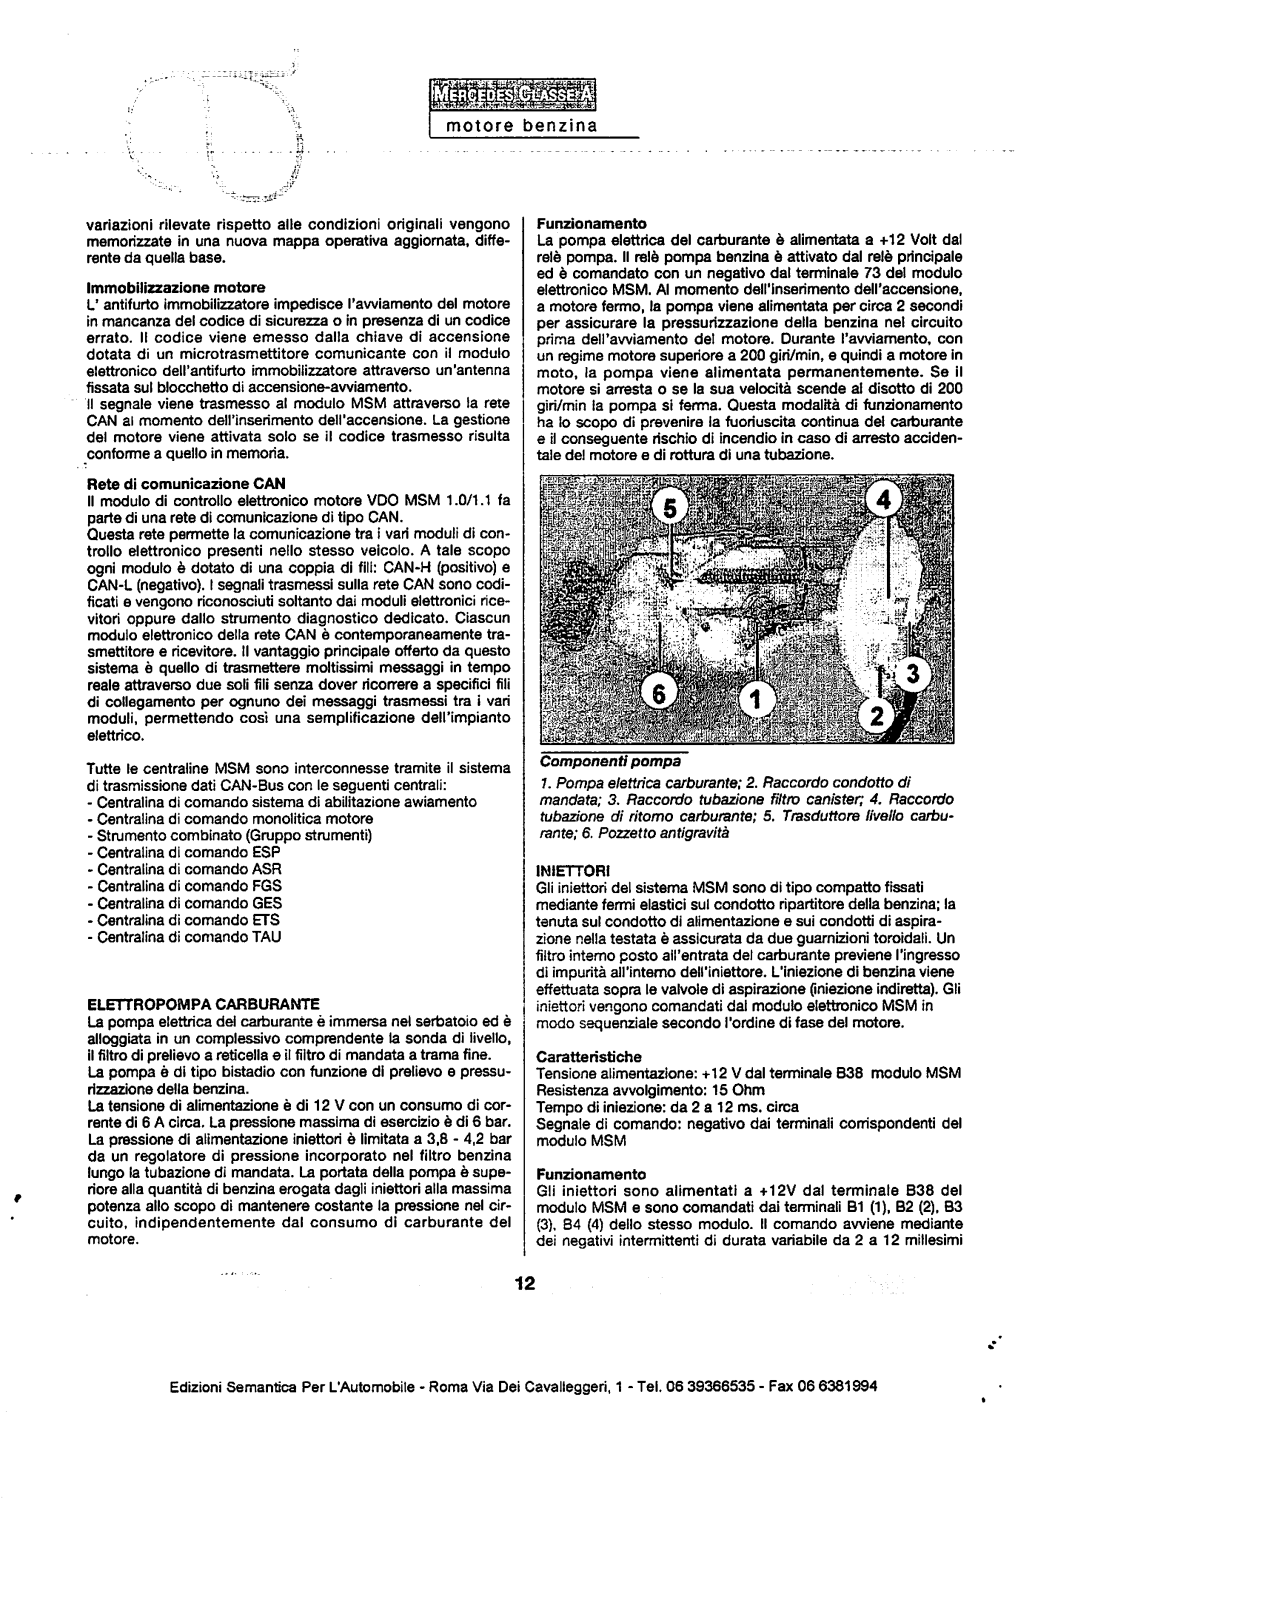 w168 - (W168): Manual técnico - tudo sobre - 1997 a 2004 - italiano 2nuj30i